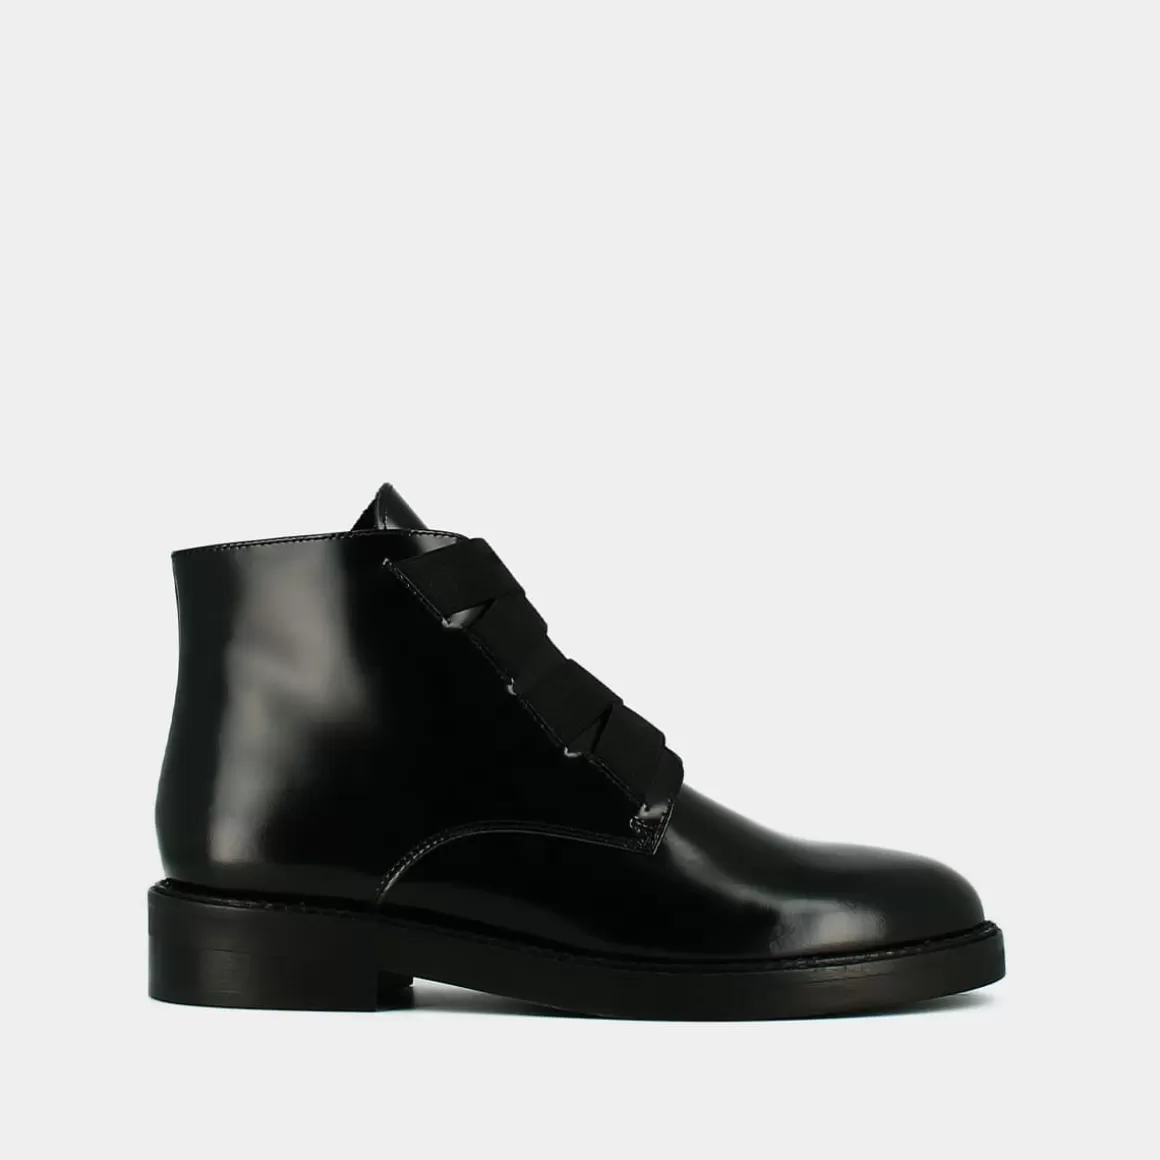 Boots with heels<Jonak Best Sale